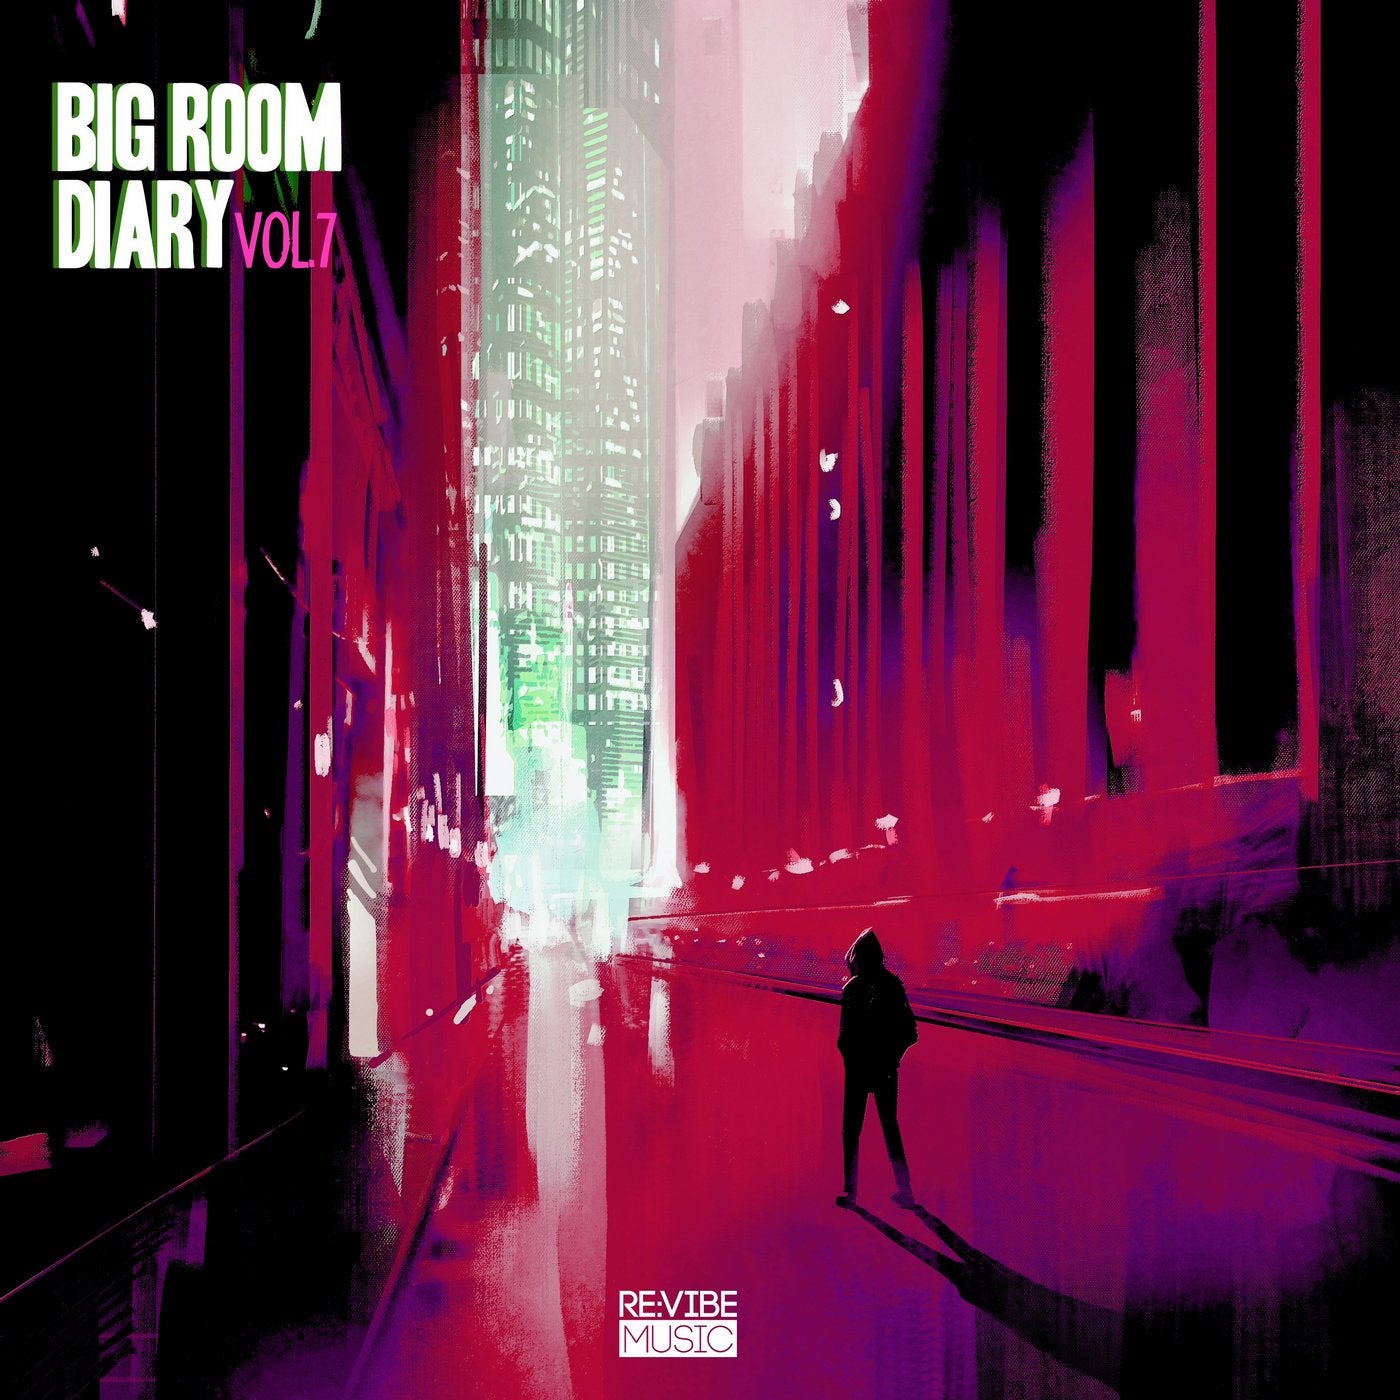 Big Room Diary, Vol. 7